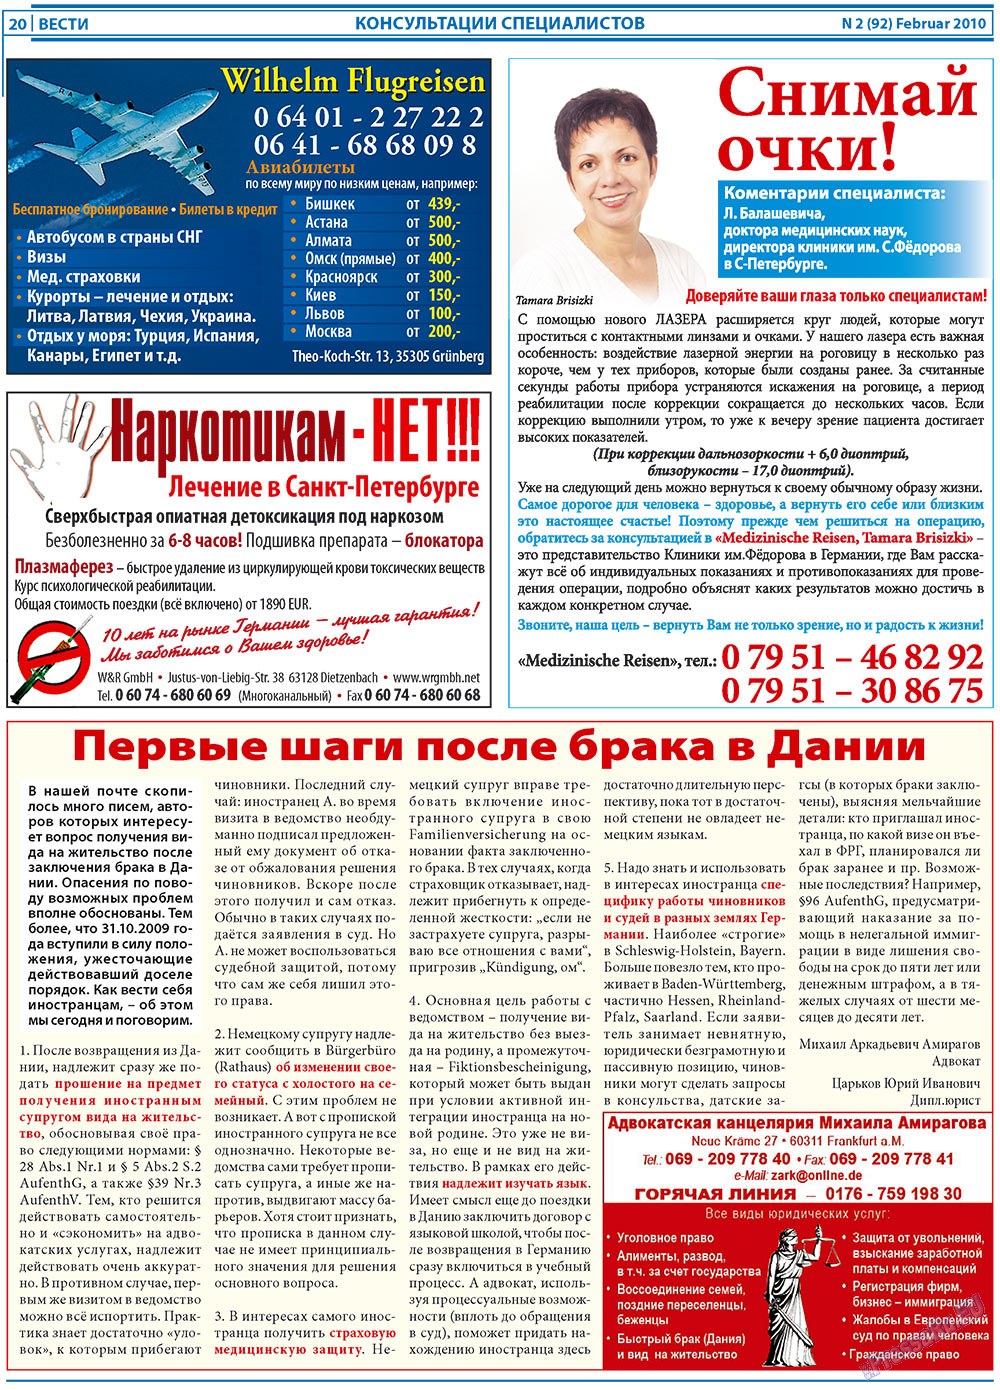 Вести, газета. 2010 №2 стр.20